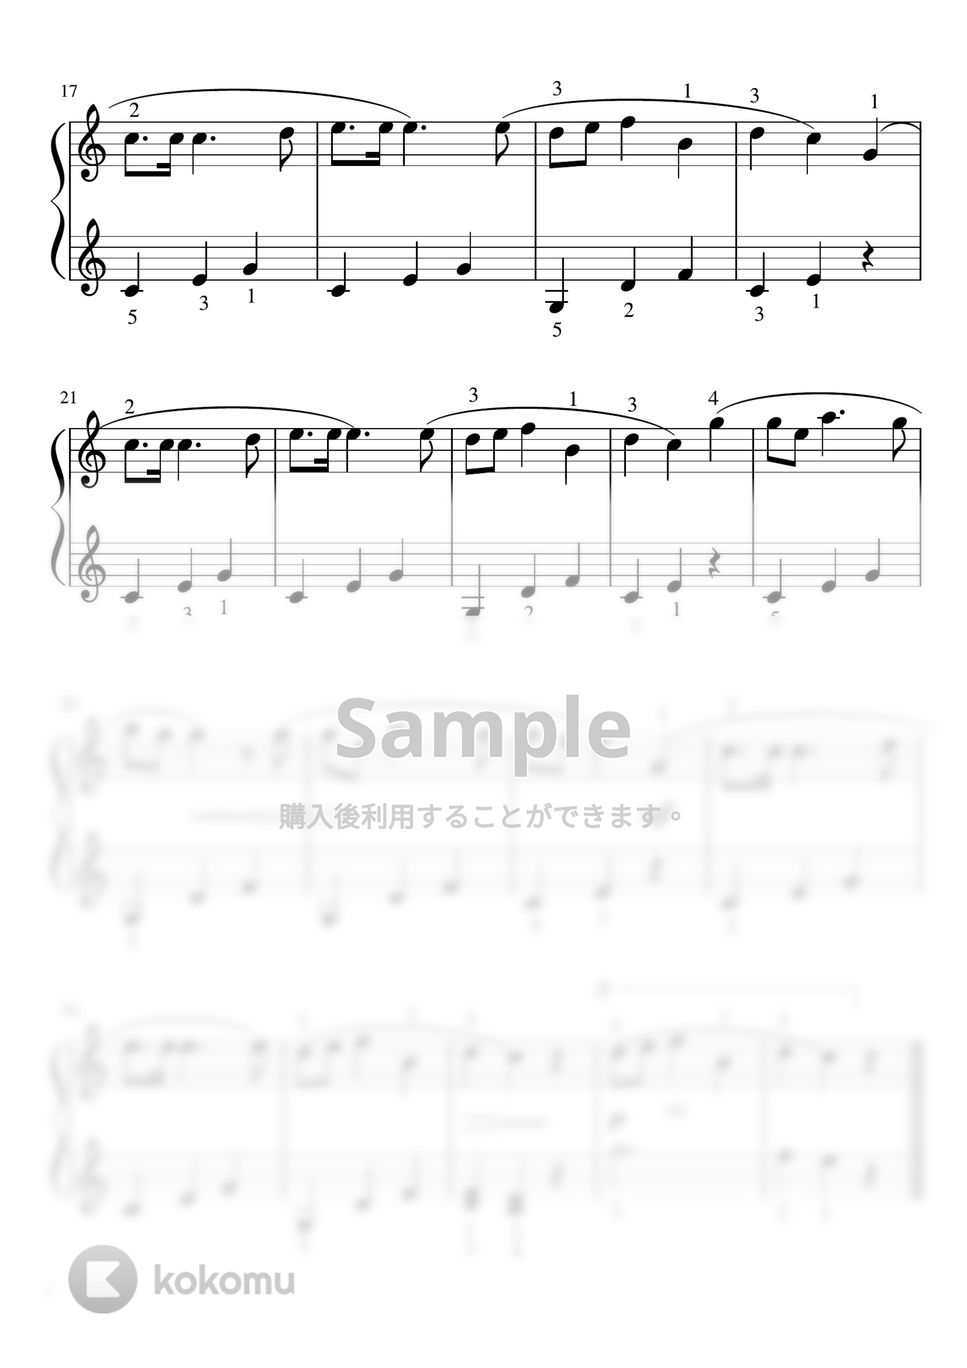 トラディショナル - もみの木 (Cdur・ピアノソロ初級・指番号付) by pfkaori